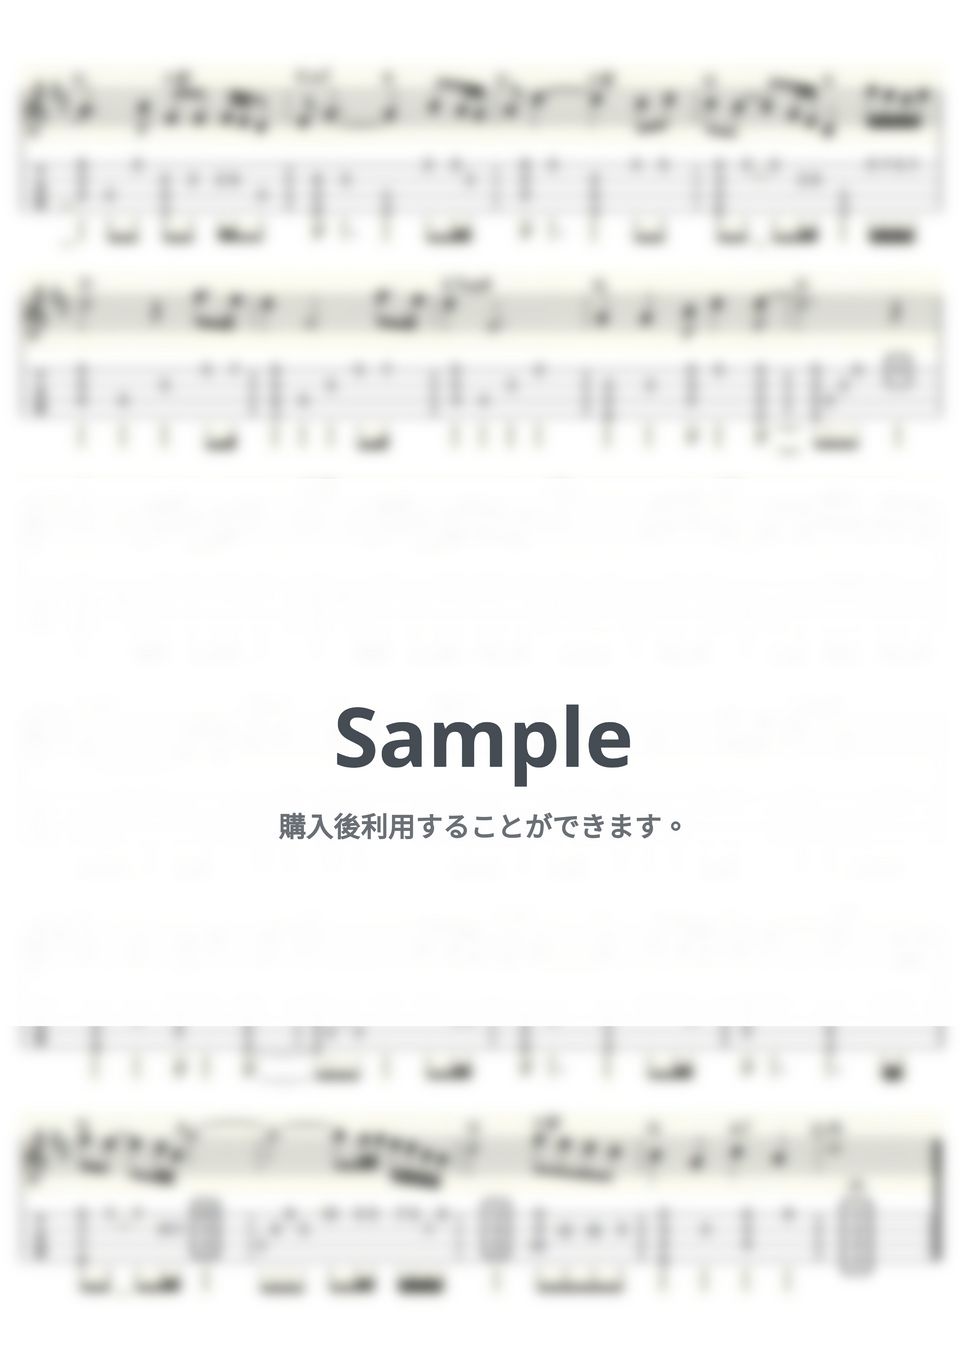 ポール・マッカートニー&ウイングス - My Love (ｳｸﾚﾚｿﾛ/High-G・Low-G/中級) by ukulelepapa